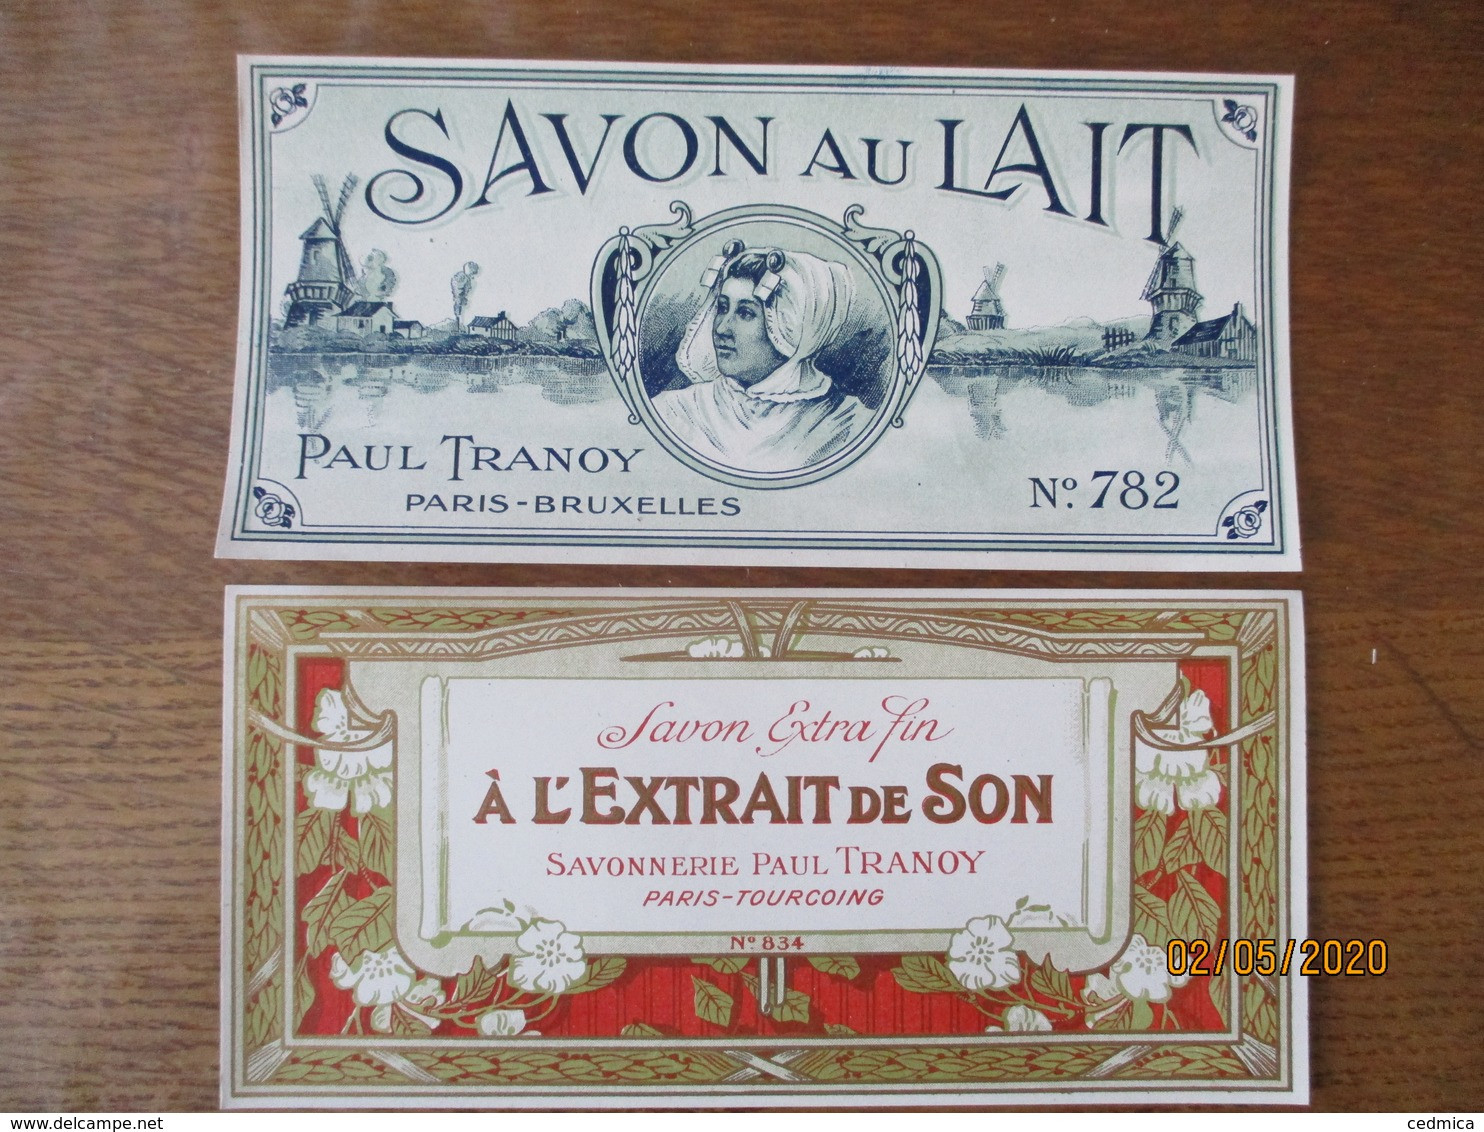 2 ETIQUETTES SAVON AU LAIT PAUL TRANOY PARIS-BRUXELLES ET SAVON A L'EXTRAIT DE SON SAVONNERIE PAUL TRANOY PARIS TOURCOIN - Labels